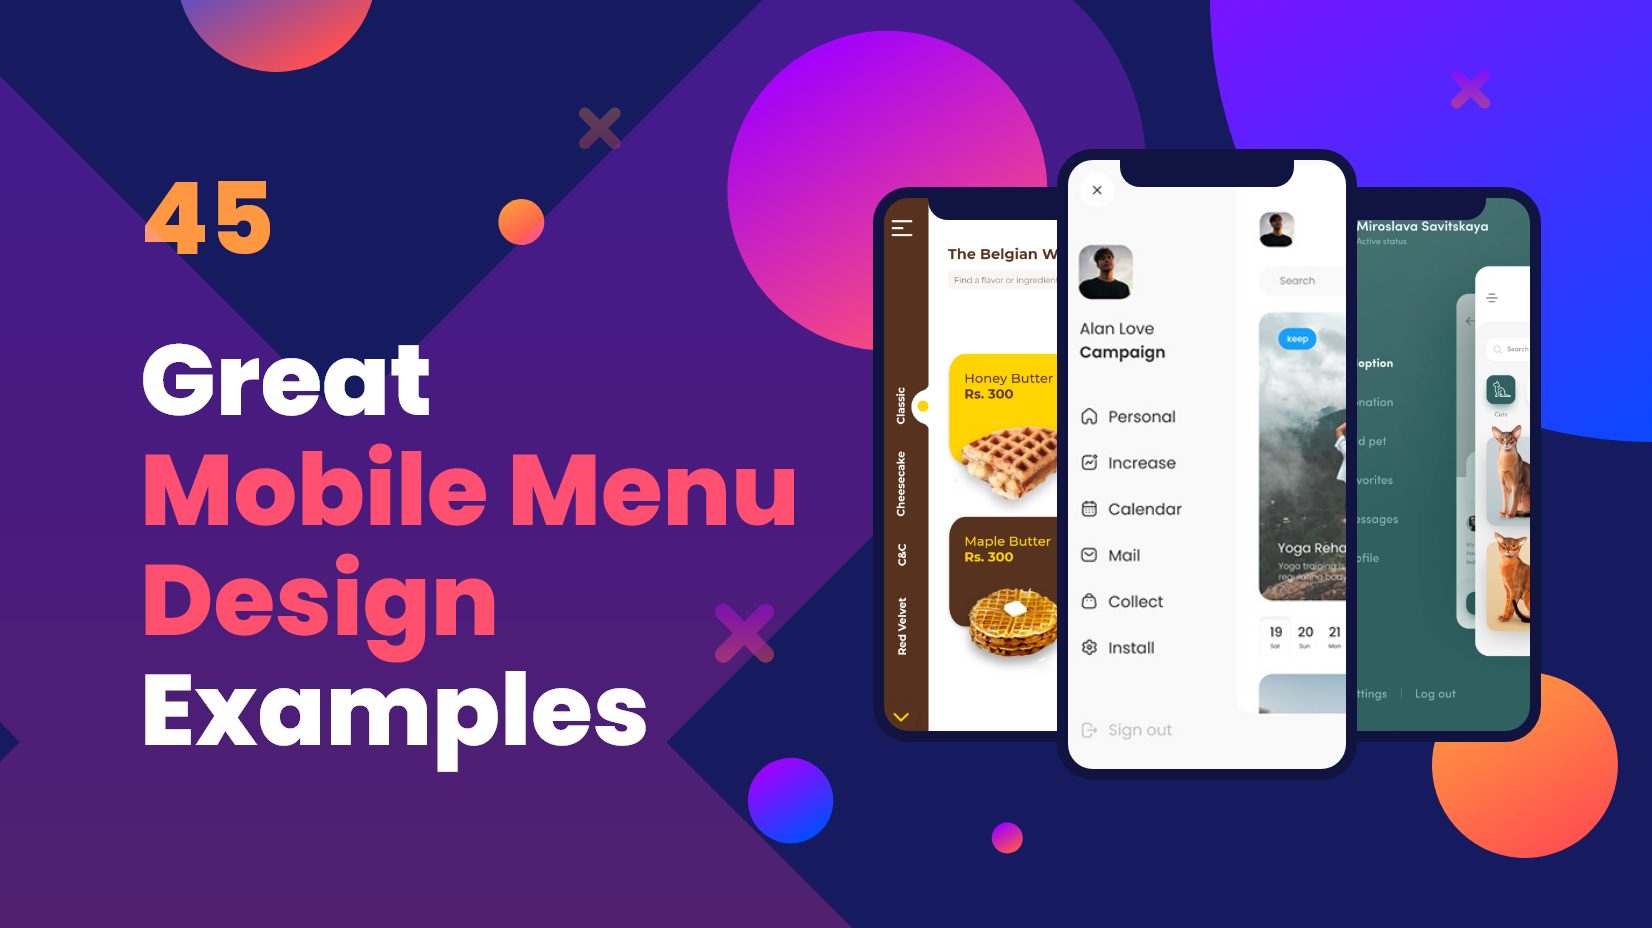 Mobile menu design: Thiết kế menu di động chuyên nghiệp đã bao giờ dễ dàng đến vậy! Với các công cụ thiết kế đơn giản, bạn có thể tạo ra các menu hấp dẫn, dễ sử dụng trên điện thoại di động và mang lại trải nghiệm tốt nhất cho người dùng.